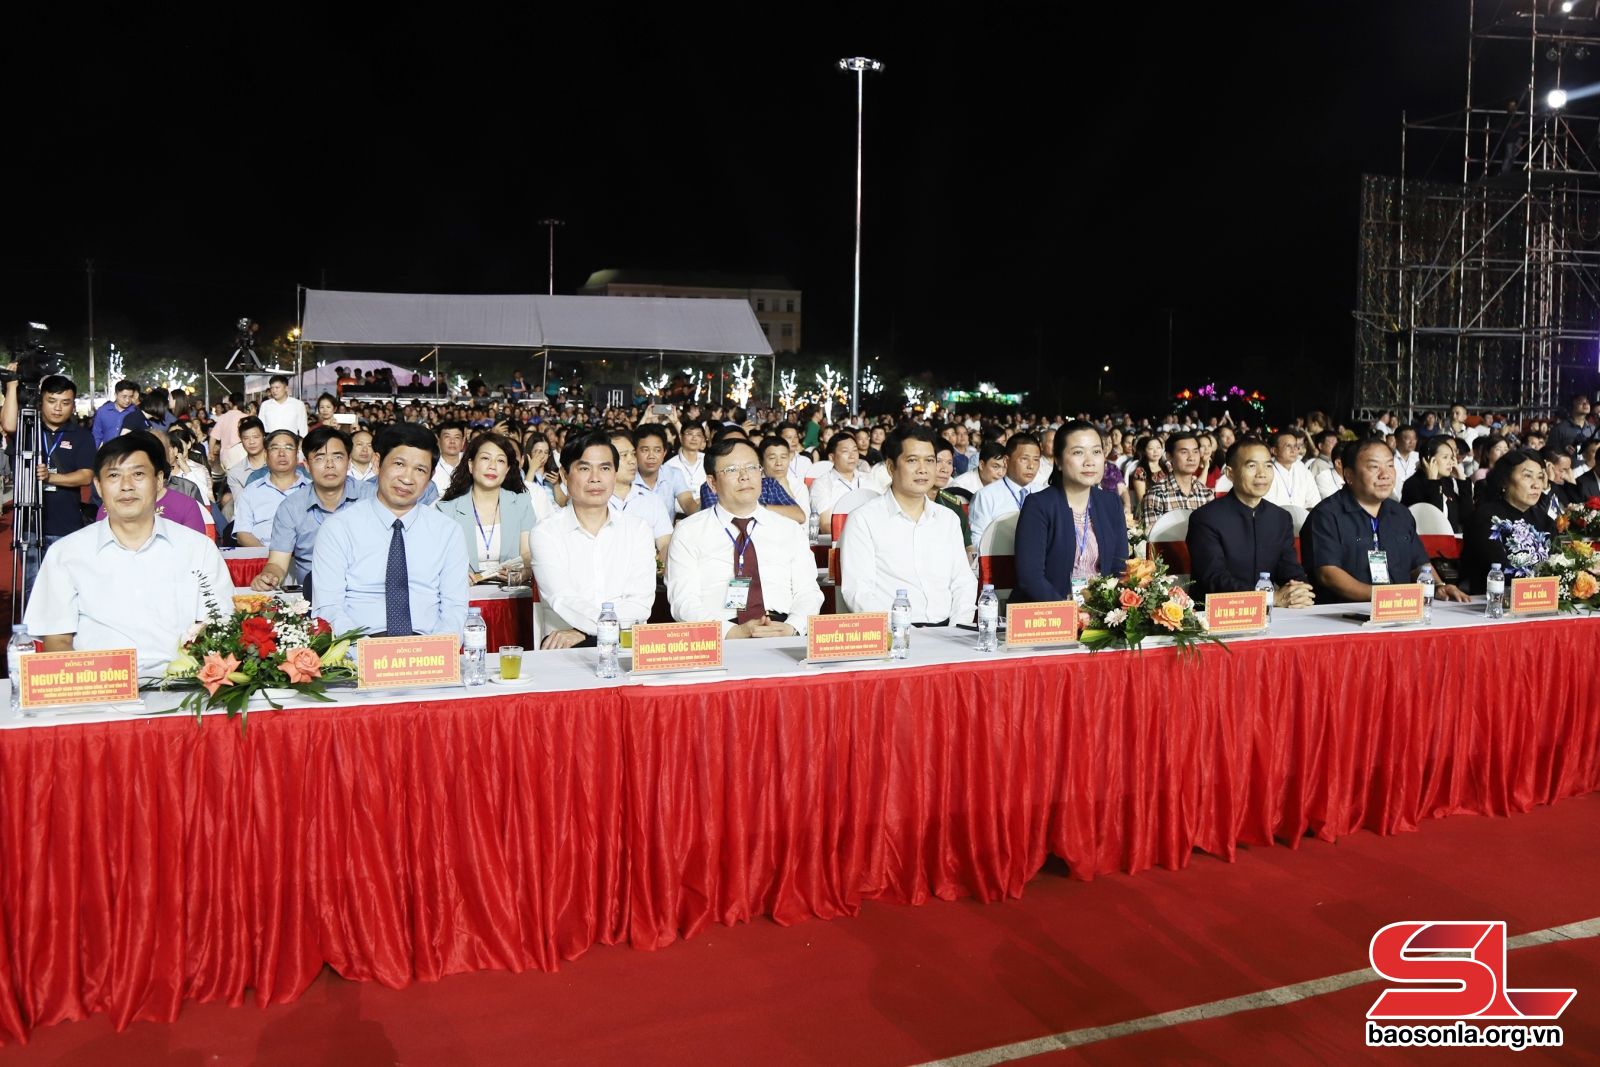 Đại biểu Bộ Văn hóa, Thể thao và Du lịch cùng lãnh đạo tỉnh Sơn La.

